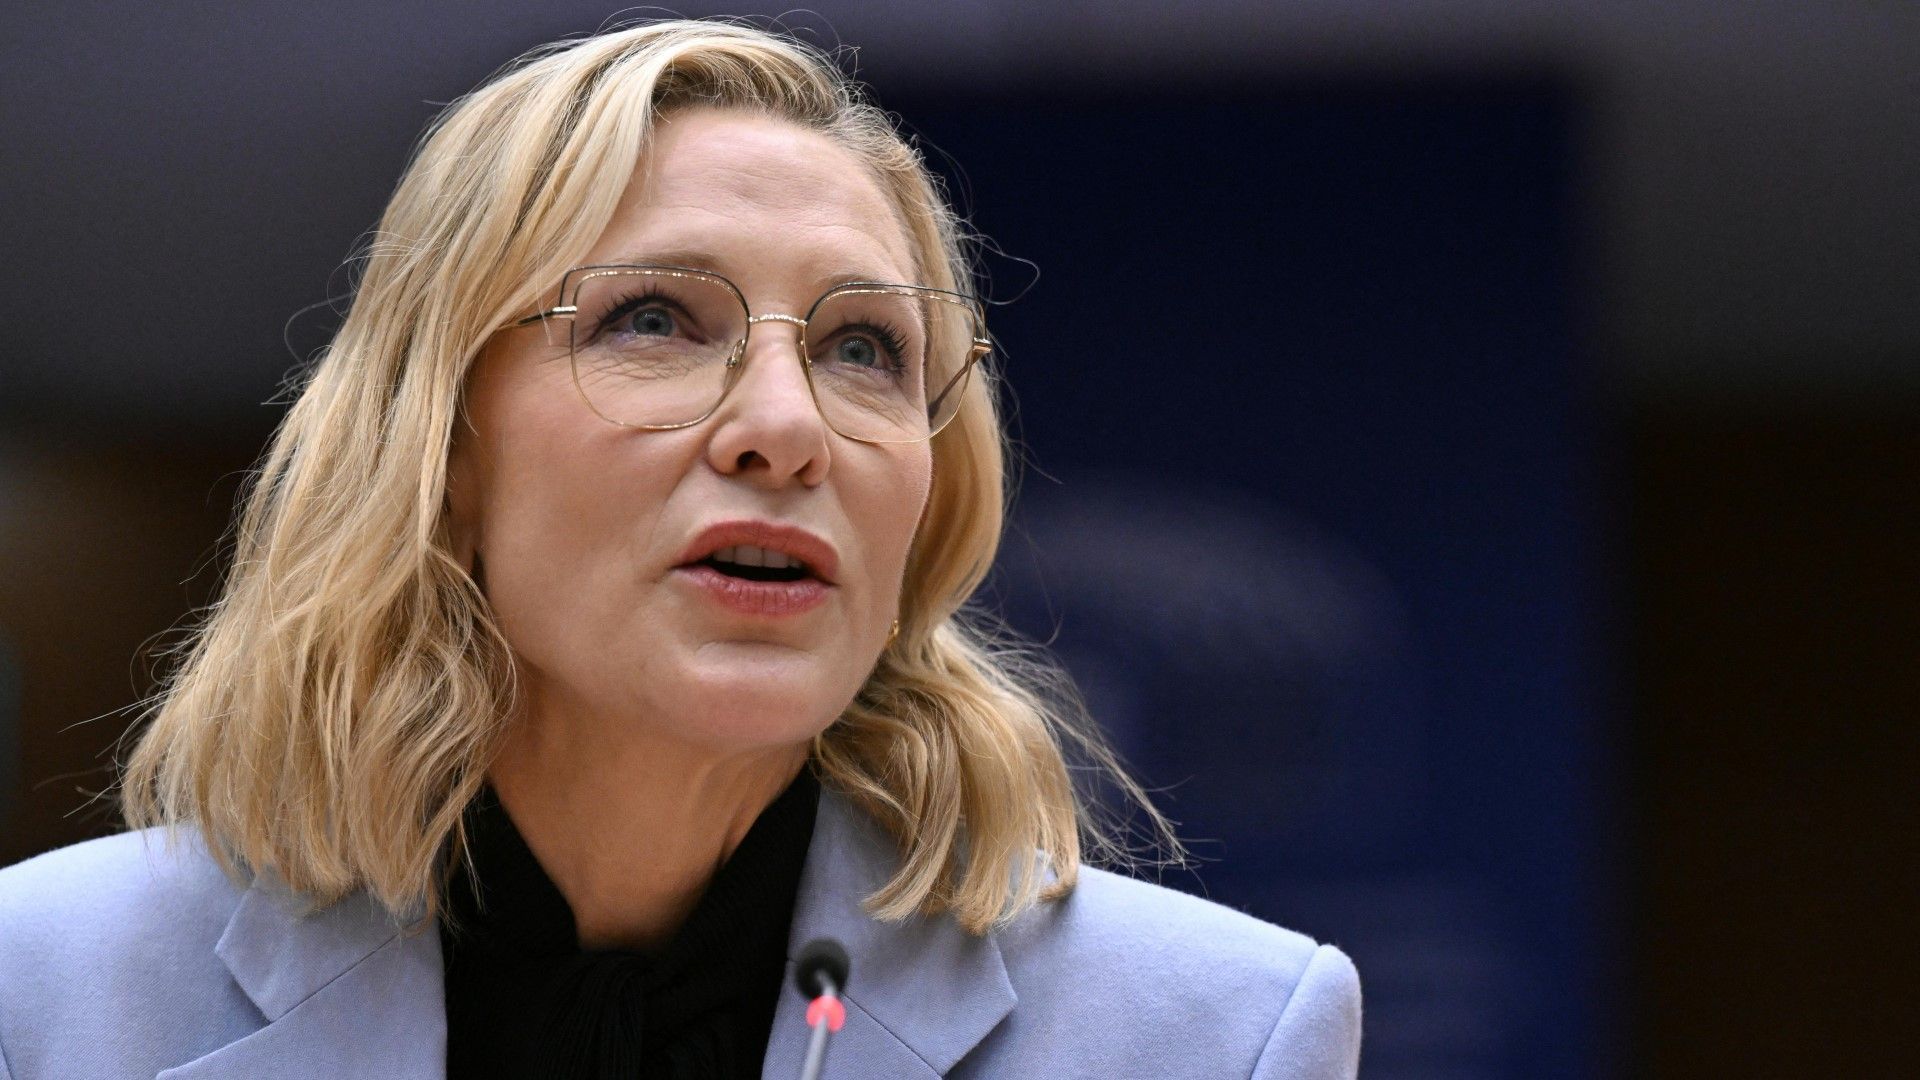 Cate Blanchett warnt vor "gefährlichen Mythen" über Migranten